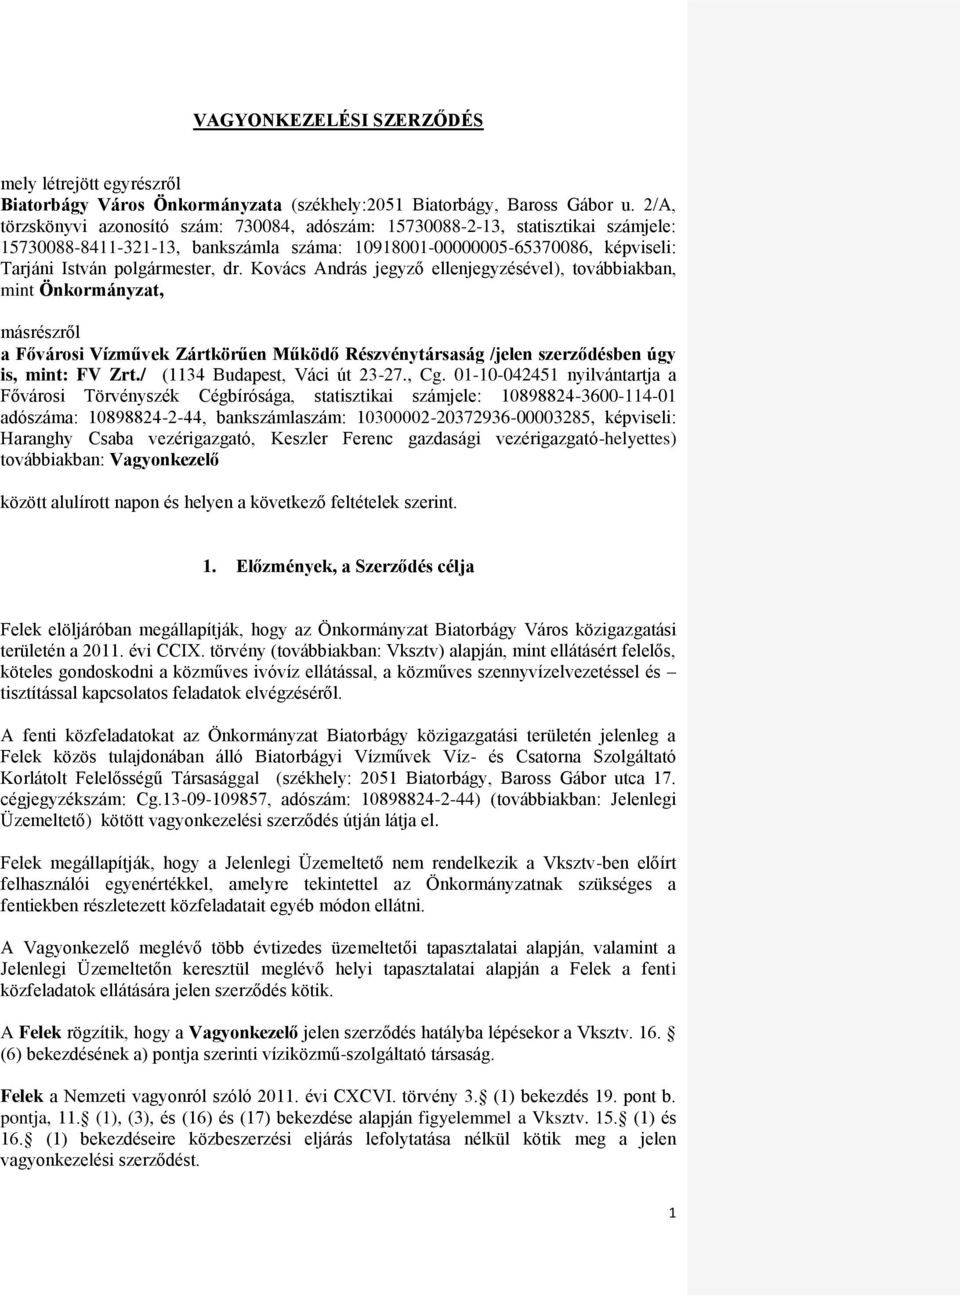 Kovács András jegyző ellenjegyzésével), továbbiakban, mint Önkormányzat, másrészről a Fővárosi Vízművek Zártkörűen Működő Részvénytársaság /jelen szerződésben úgy is, mint: FV Zrt.